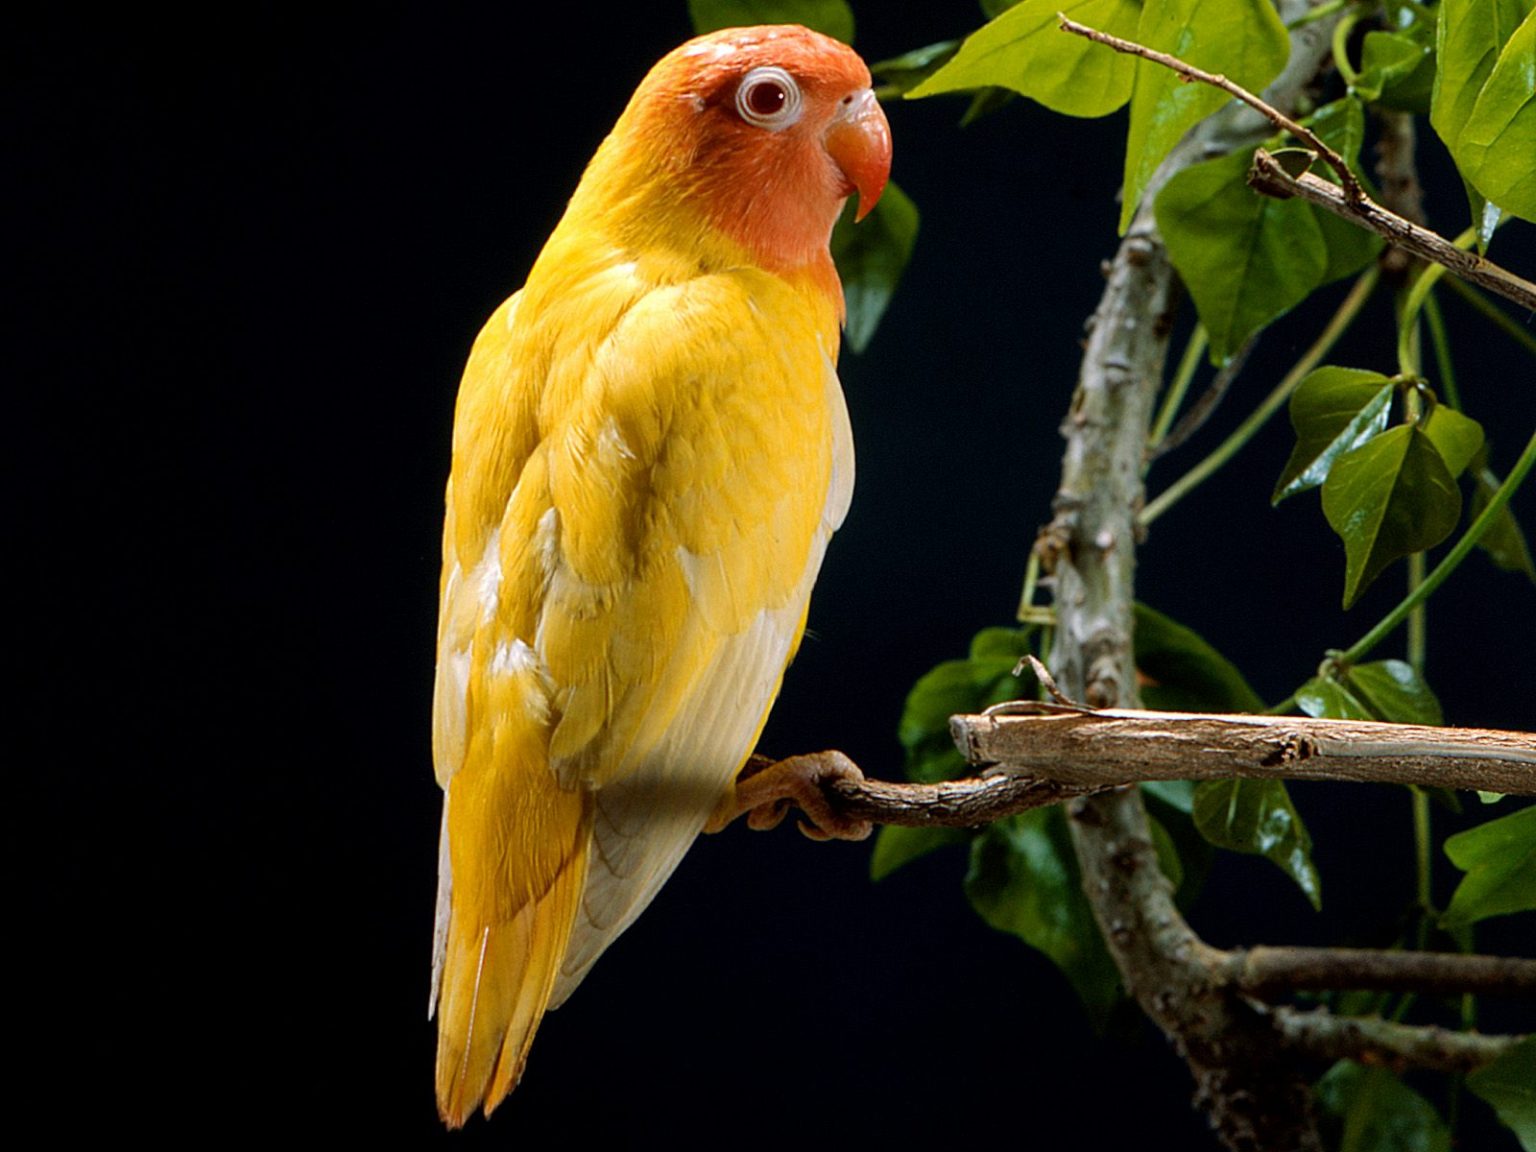 Tổng hợp hình ảnh chim Vẹt đẹp nhất - [Kích thước hình ảnh: 1536x1152 px]